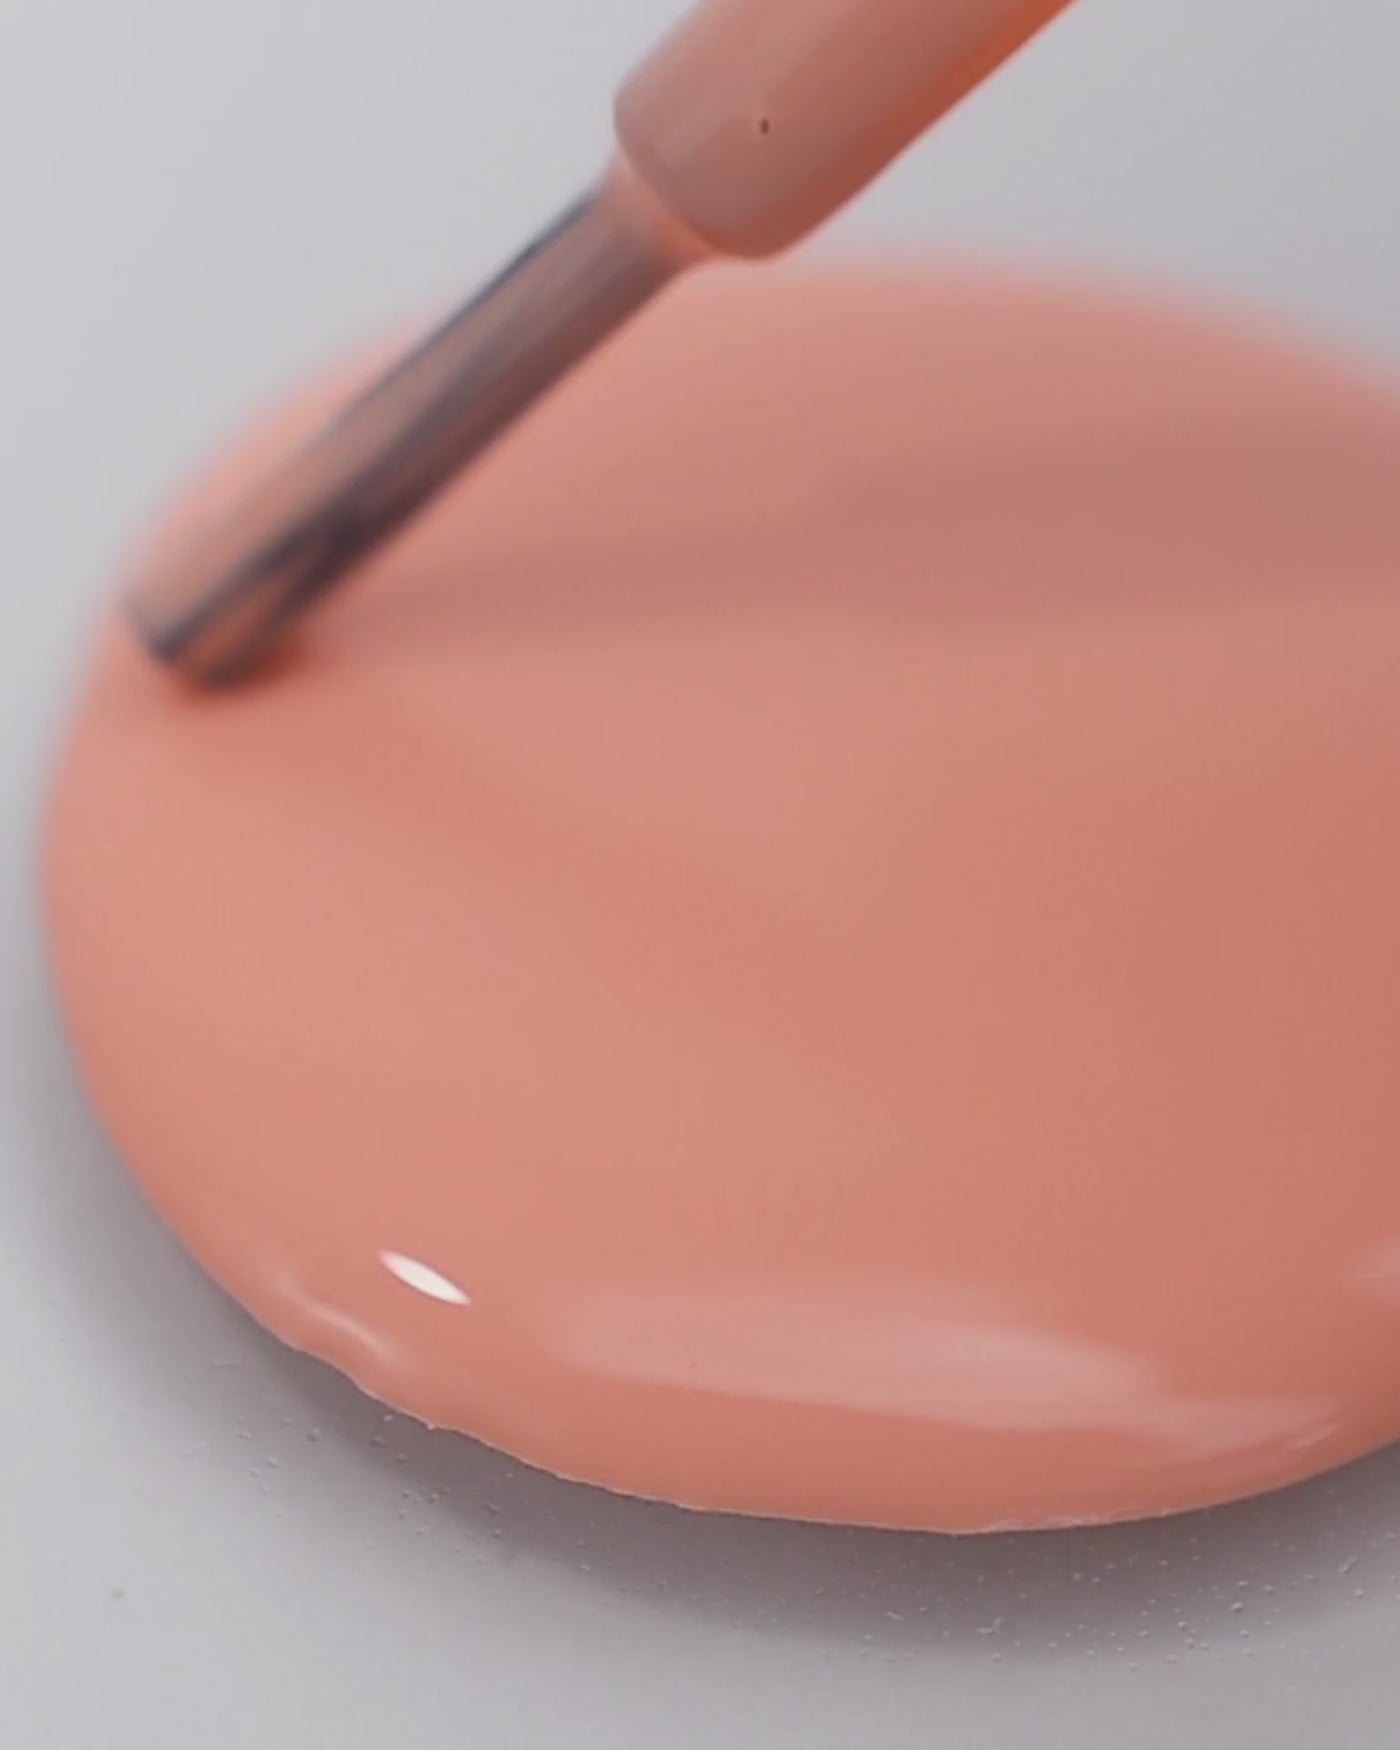 peach blush nail polish drop by sienna